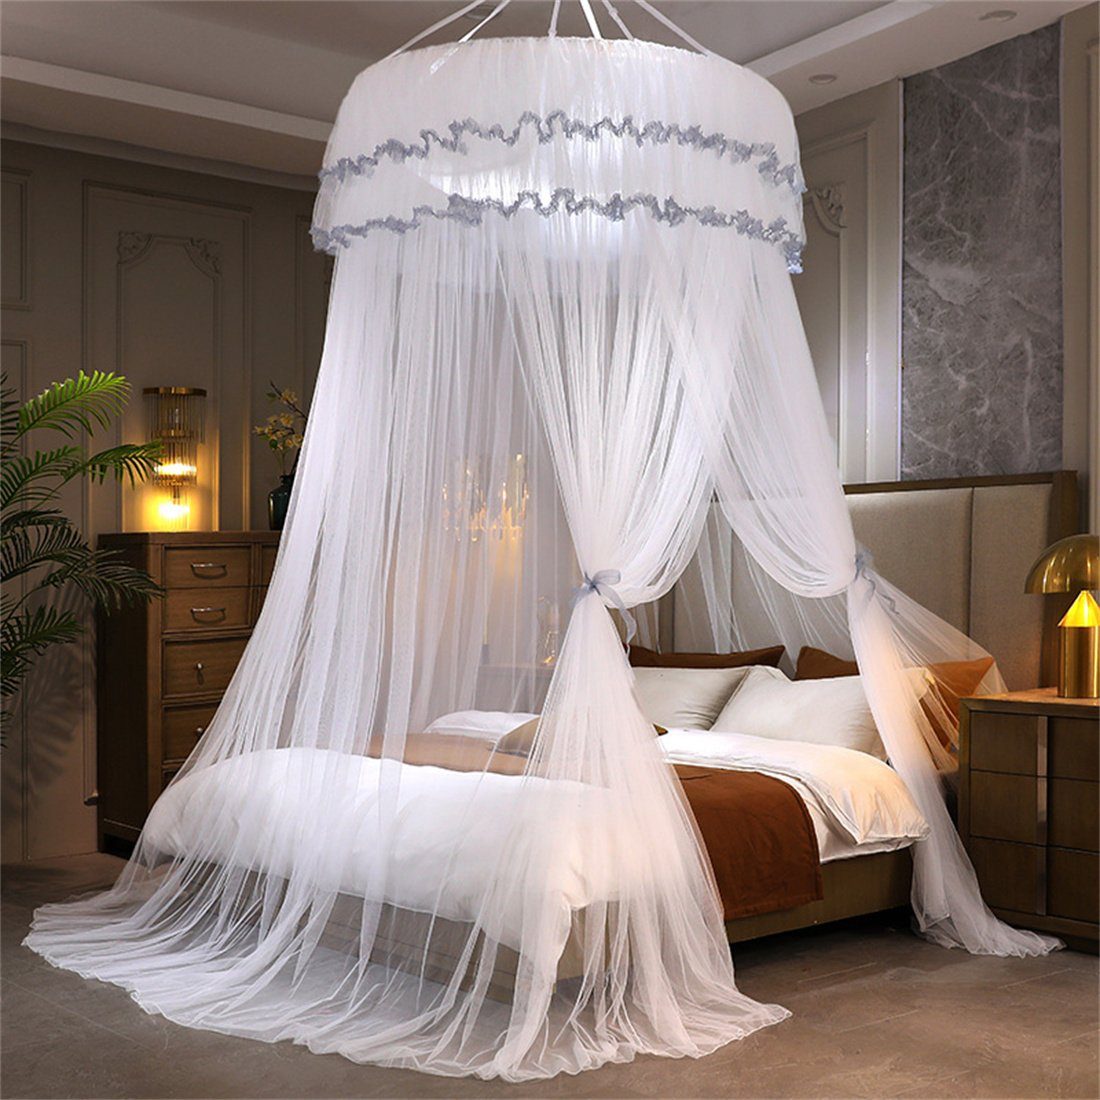 Kuppel-Decken-Moskitonetz mit ZAXSD Prinzessinnenbett raumhohem Weiß Bettvorhang Betthimmel